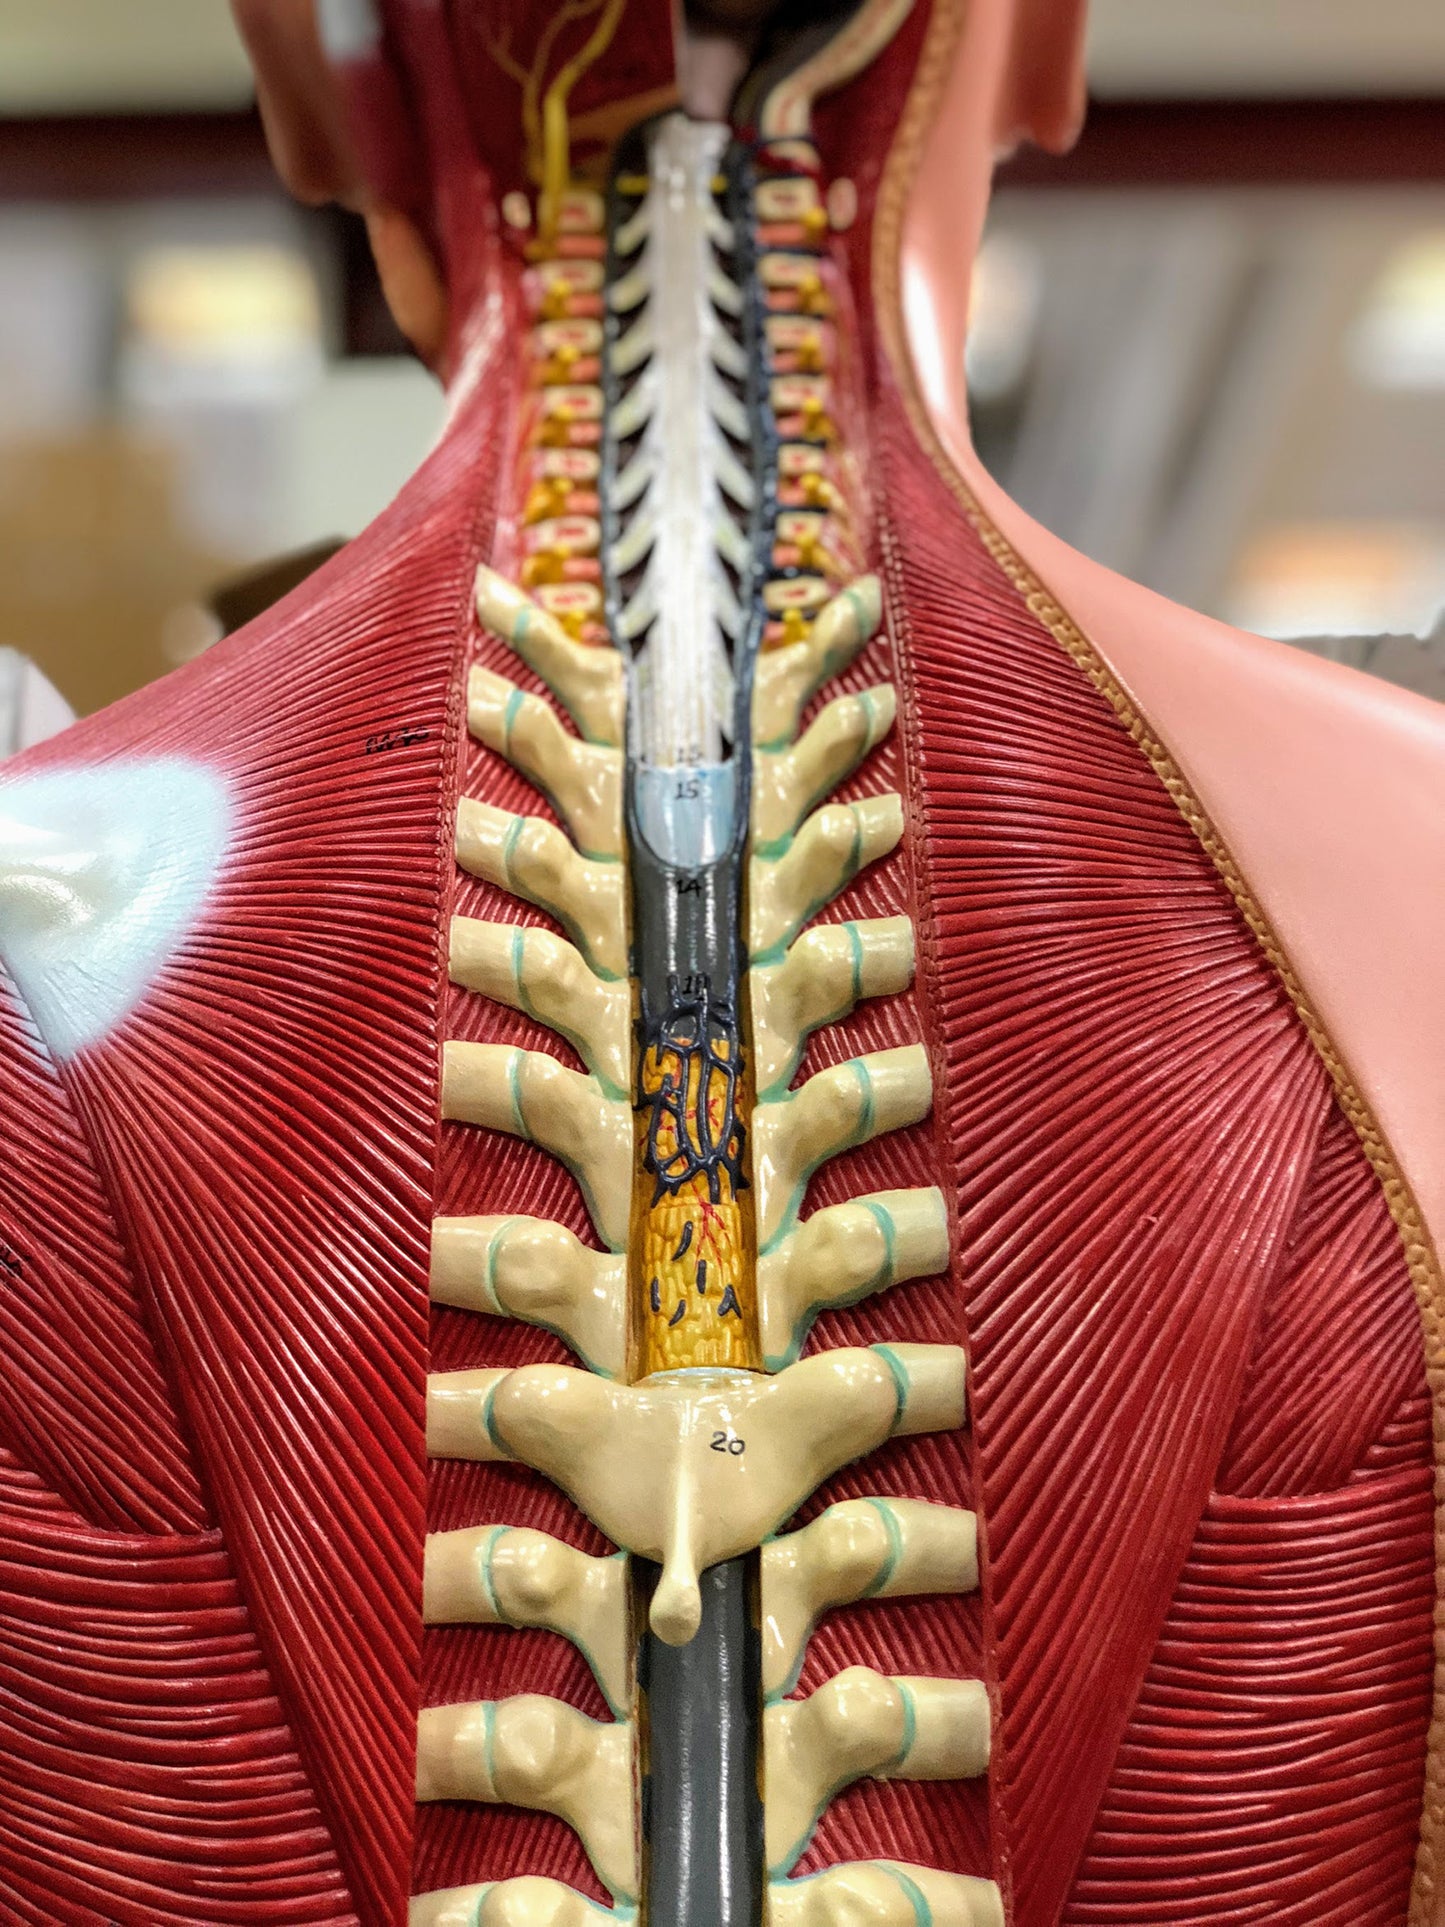 Komplett bål med 27 avtagbara delar, öppen rygg, muskler, ett foster och utbytbara könsorgan